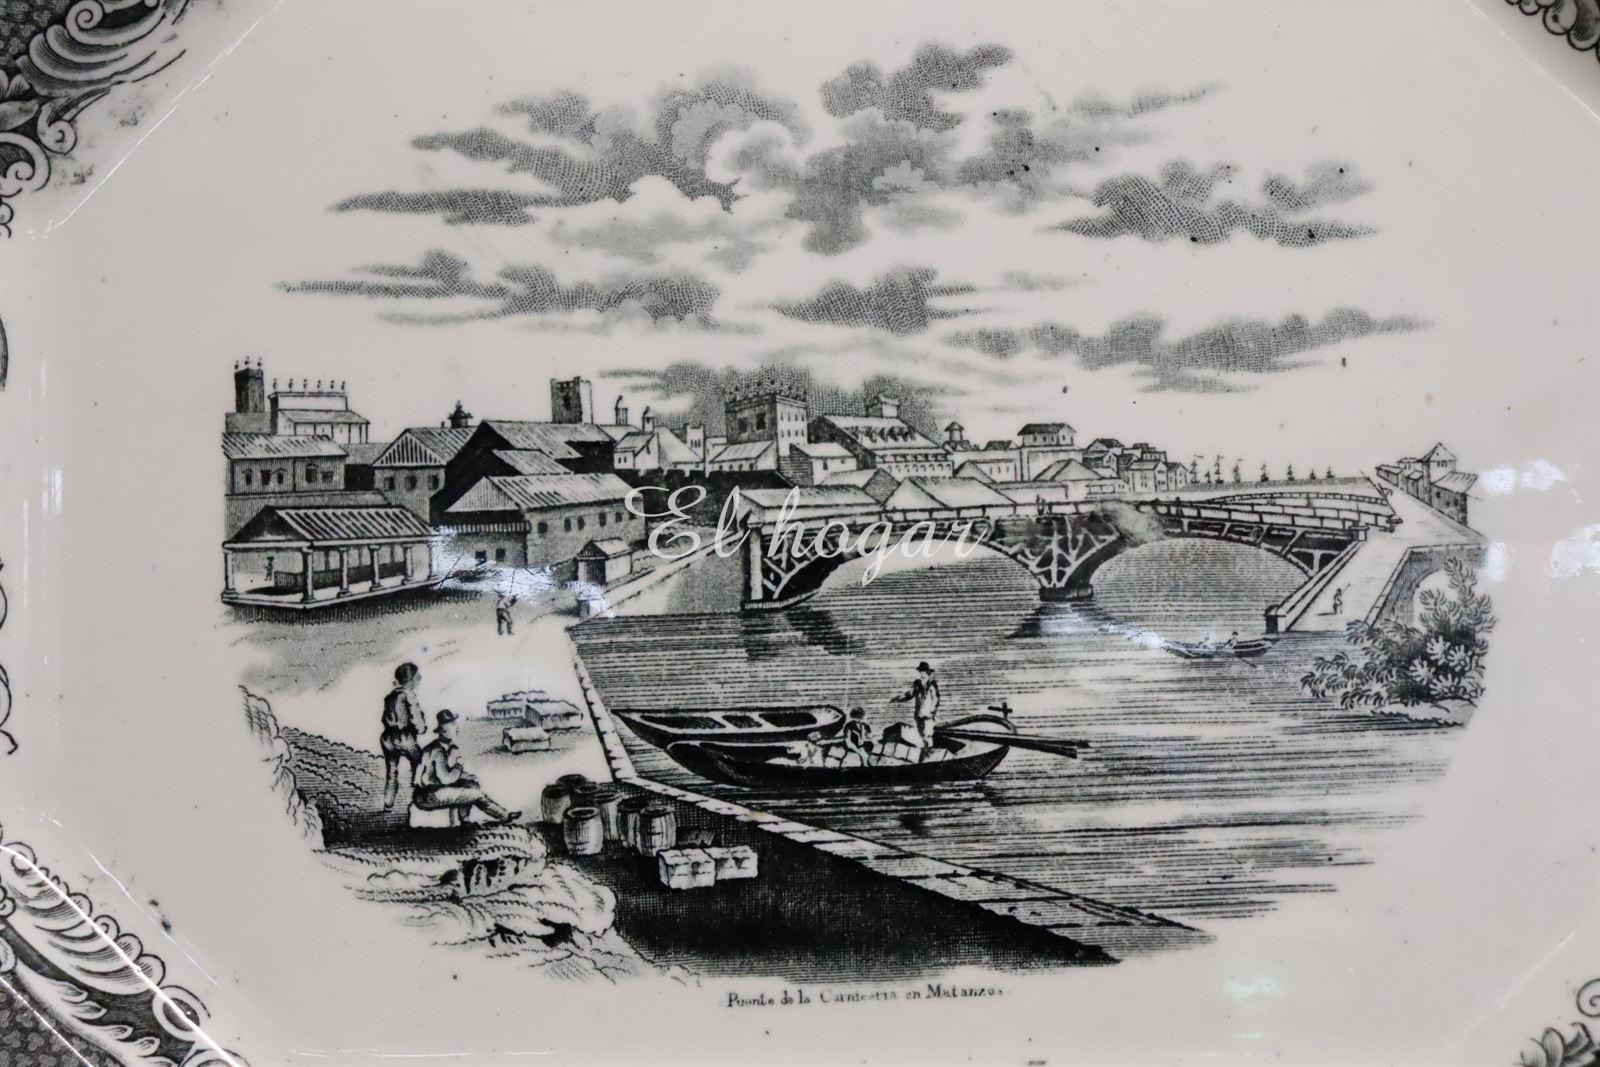 Fuente de Sargadelos 1845-1875 Puente de la carnicería en Matanzas - Imagen 4